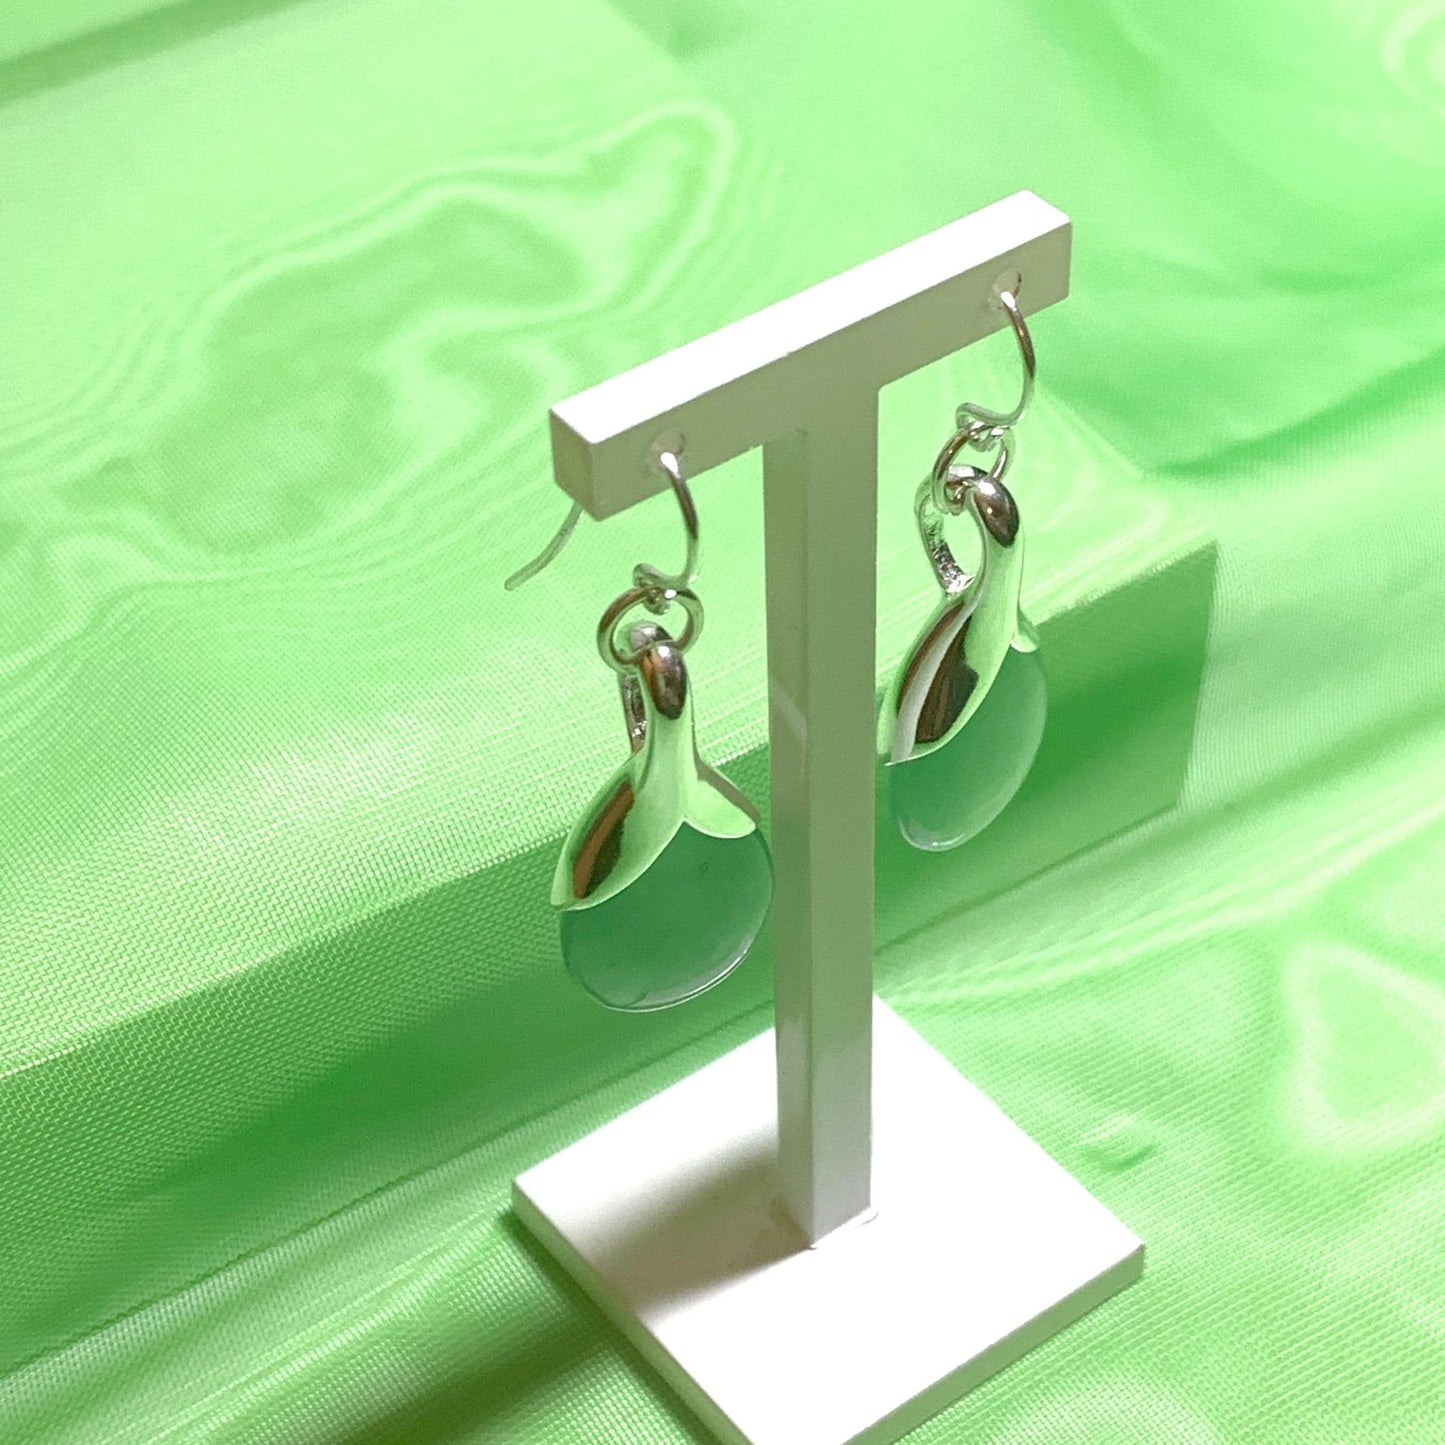 Green Jade Tear Drop Silver Pear Shaped Drop Earrings